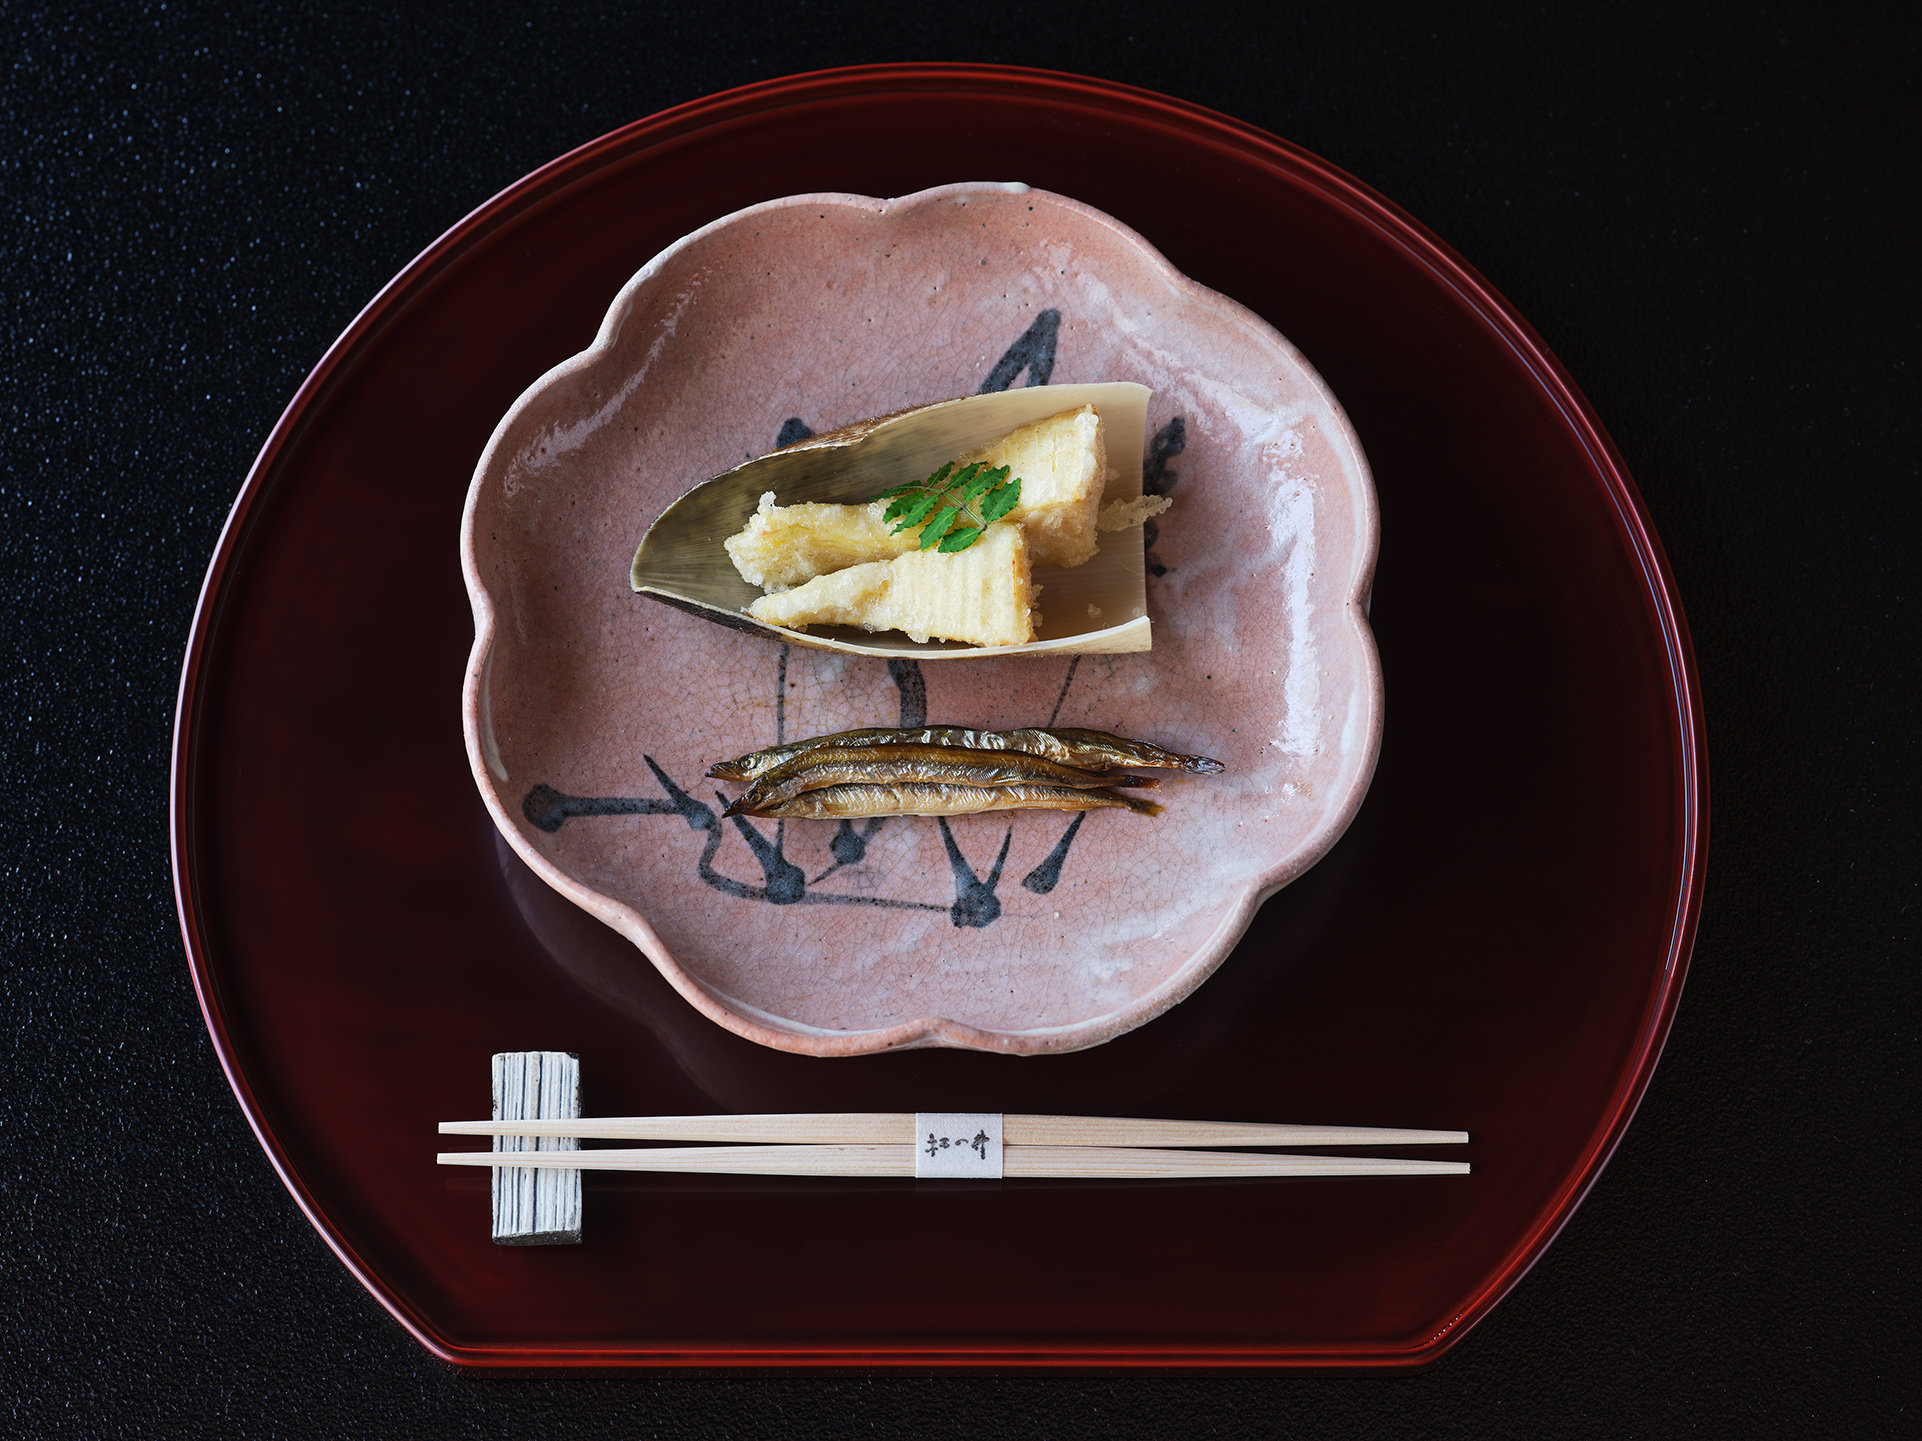 人間国宝の12代中里太郎右衛門（故人）による唐津焼に筍の天麩羅をのせて。「use（使う）」「museum」を掛け、美術館クラスの器を実際に用い、一流料理人が料理を盛るという、贅沢な食イベント「USEUM SAGA」。